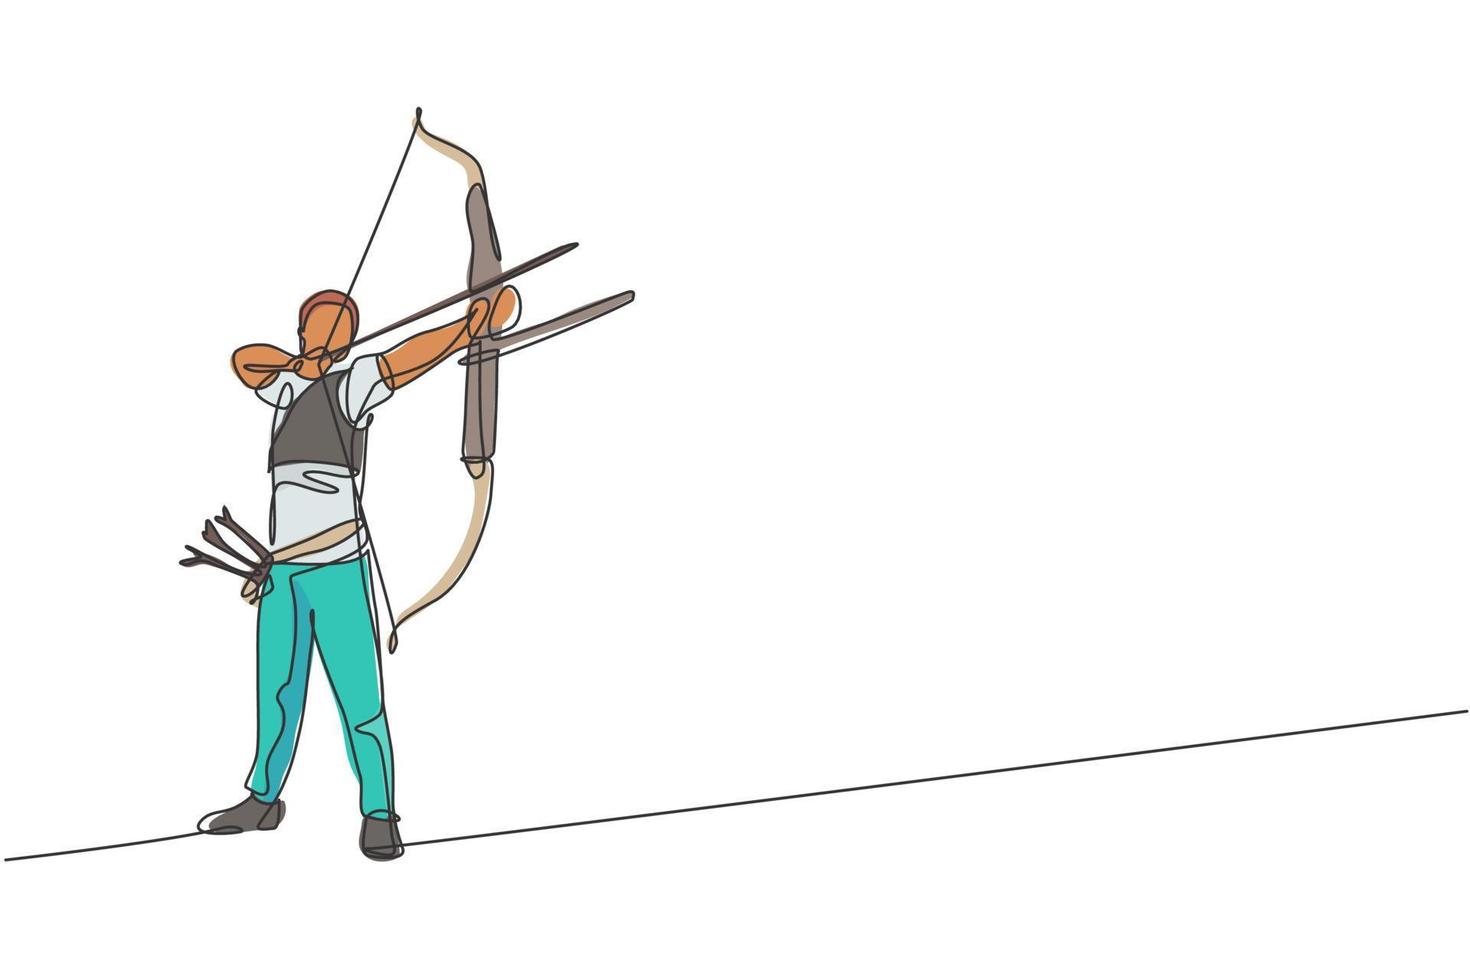 dessin en ligne continue d'un jeune archer professionnel se concentrant sur la cible de tir à l'arc. exercice de sport de tir à l'arc avec le concept d'arc. illustration graphique vectorielle de conception de dessin à une ligne à la mode vecteur